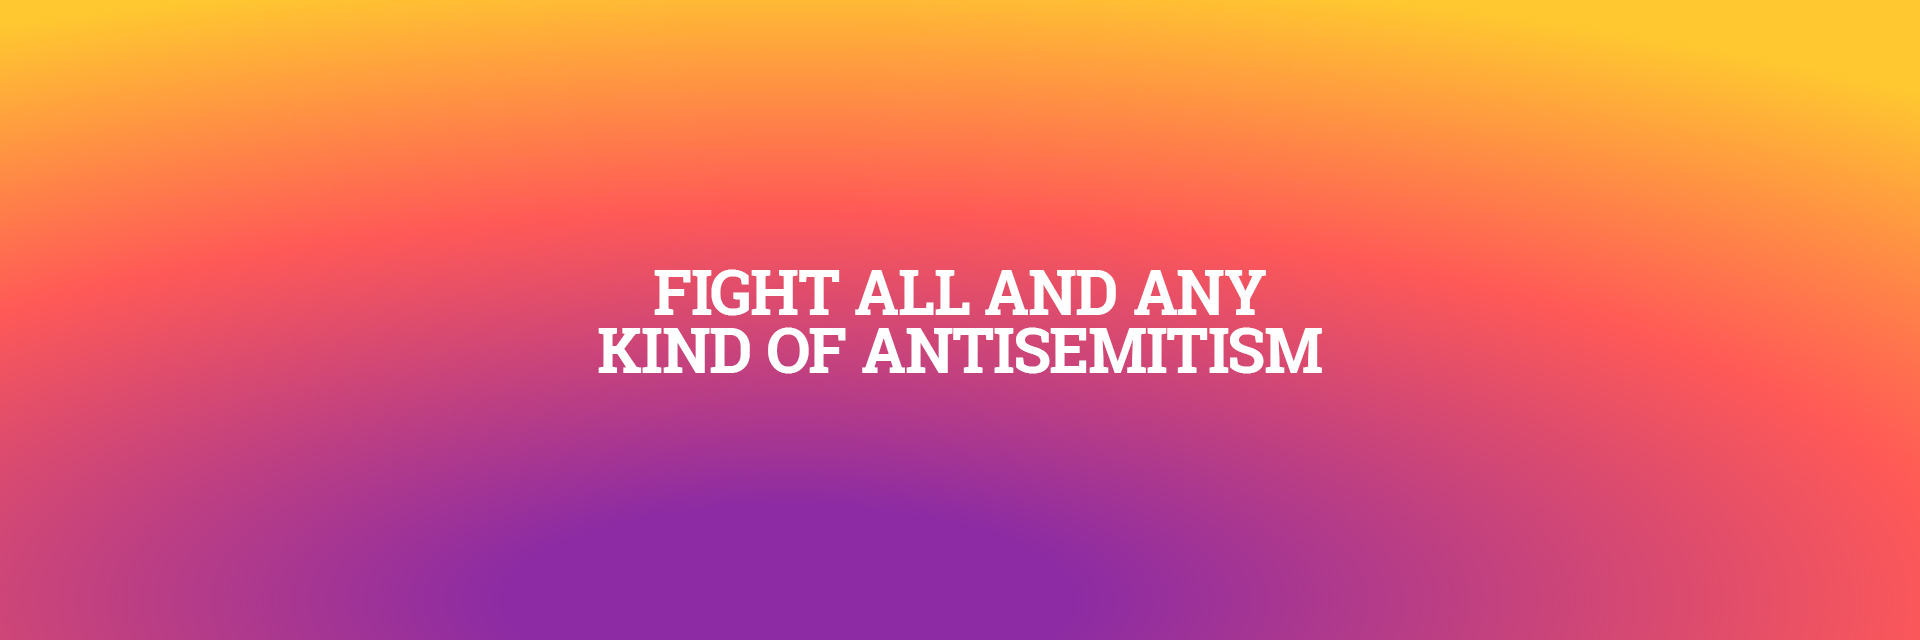 Auf einem farbigen Hintergrund steht "Fight all and any kind of antismitism". Kämpfe gegen jeden Antisemitismus